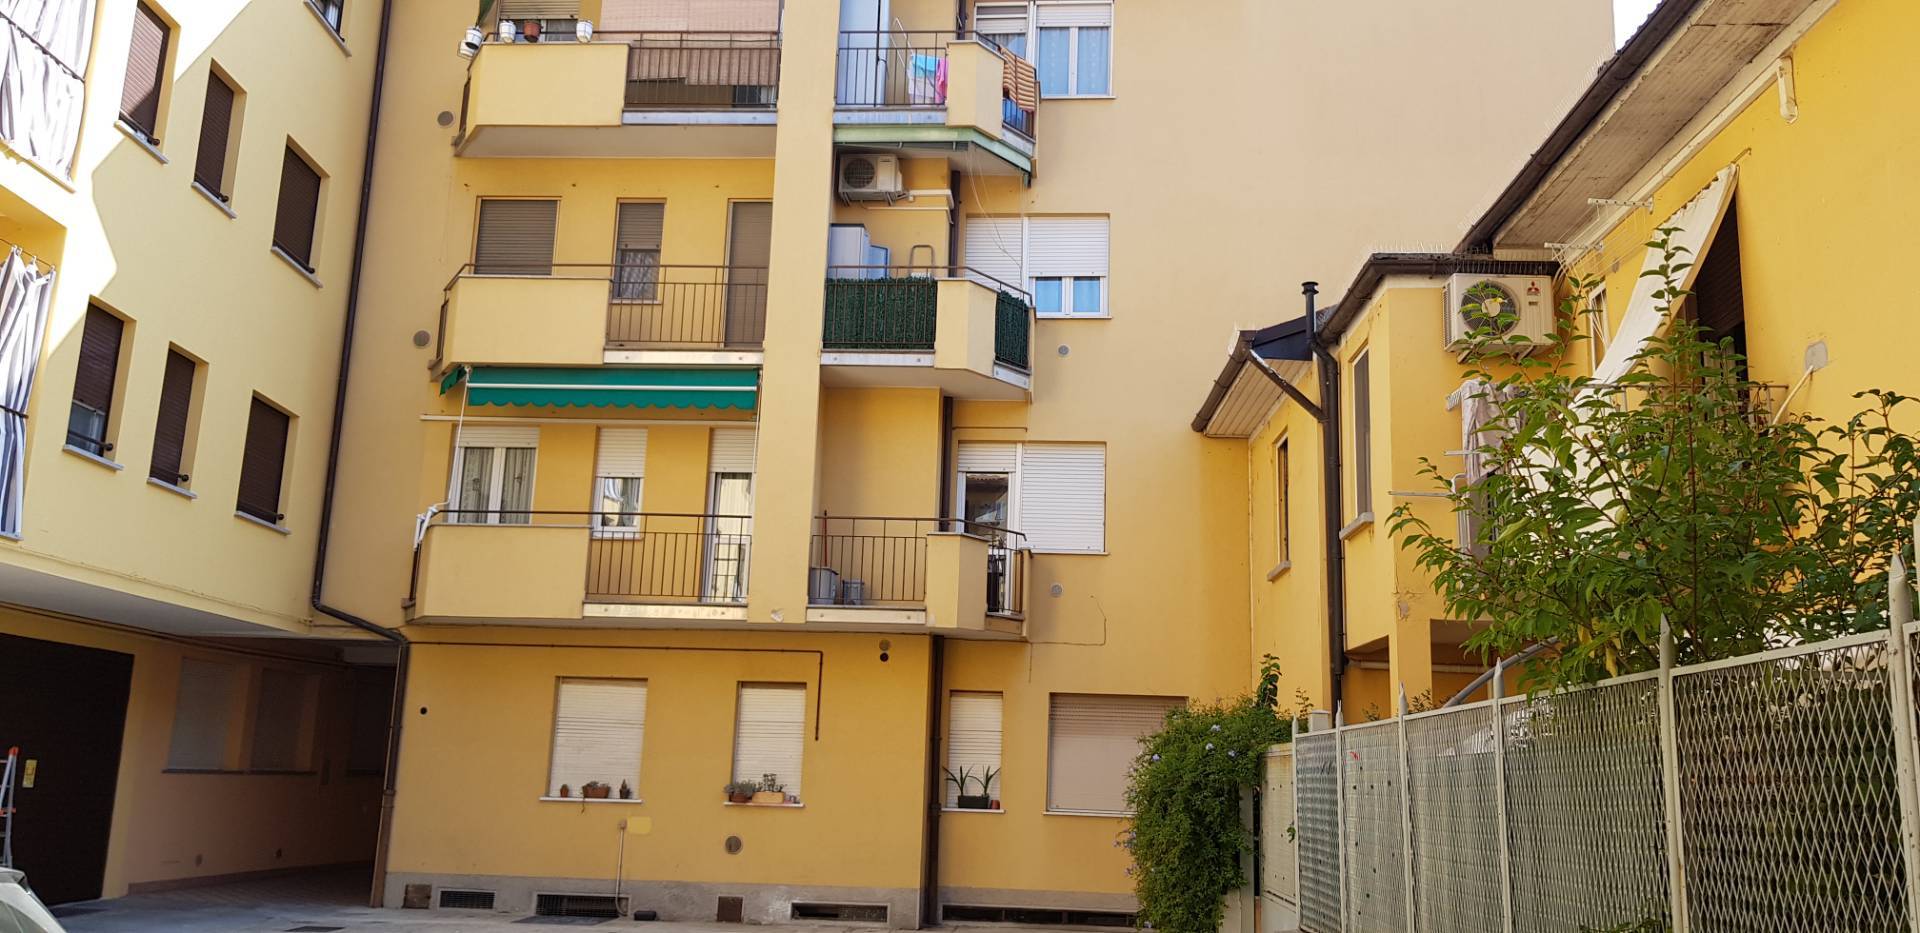 Appartamento in affitto a Melzo, 3 locali, prezzo € 850 | PortaleAgenzieImmobiliari.it